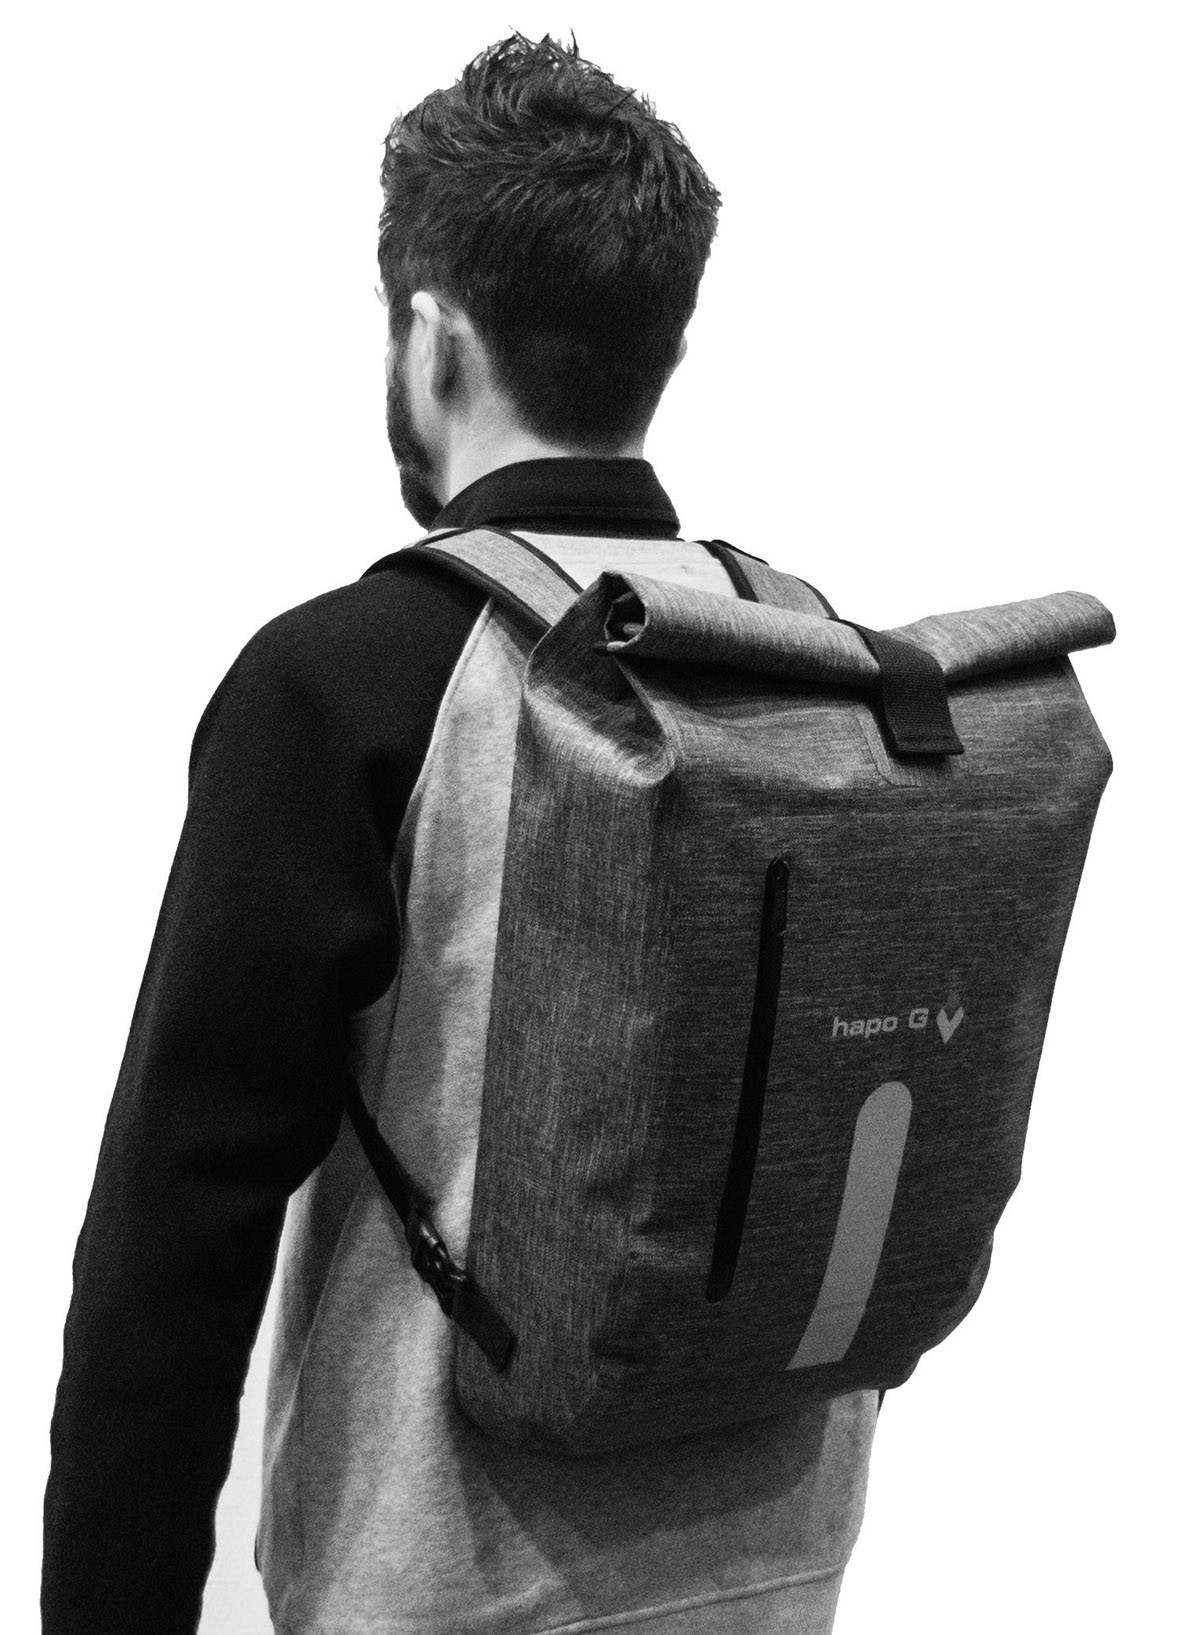 Sacoche arrière en polypropylène recyclé fixation porte-bagages